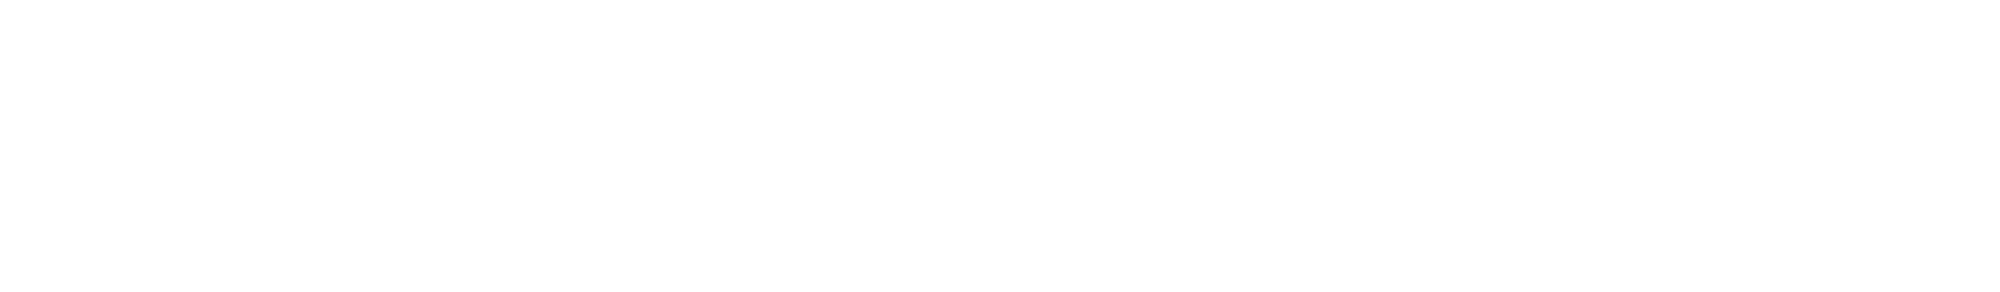 kystdrakten-logo-hvit